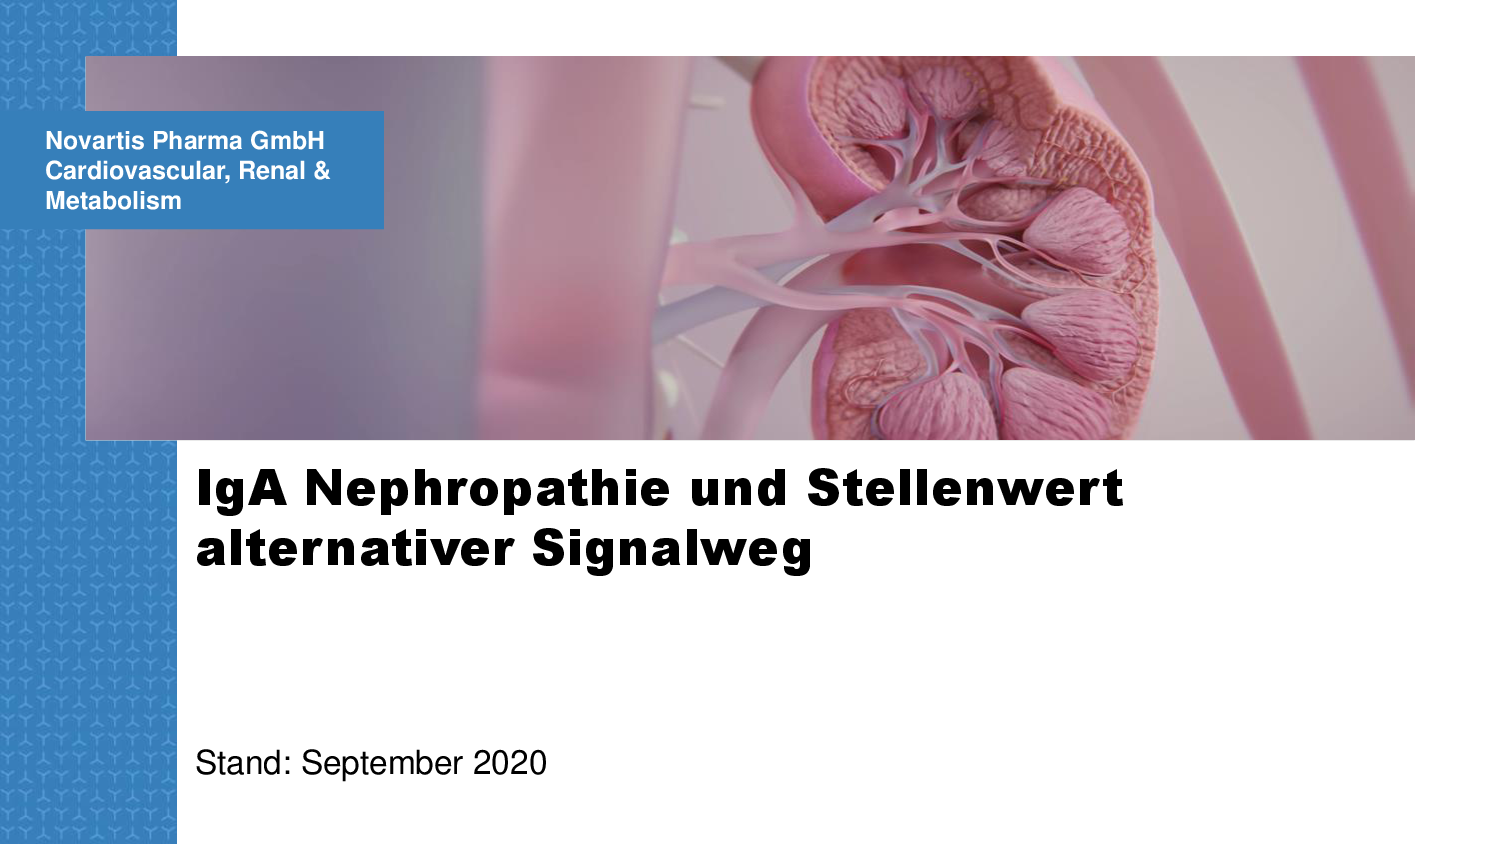 Extern_MSL_IgA Nephropathie und Stellenwert alternativer Signalweg_2020_09-001